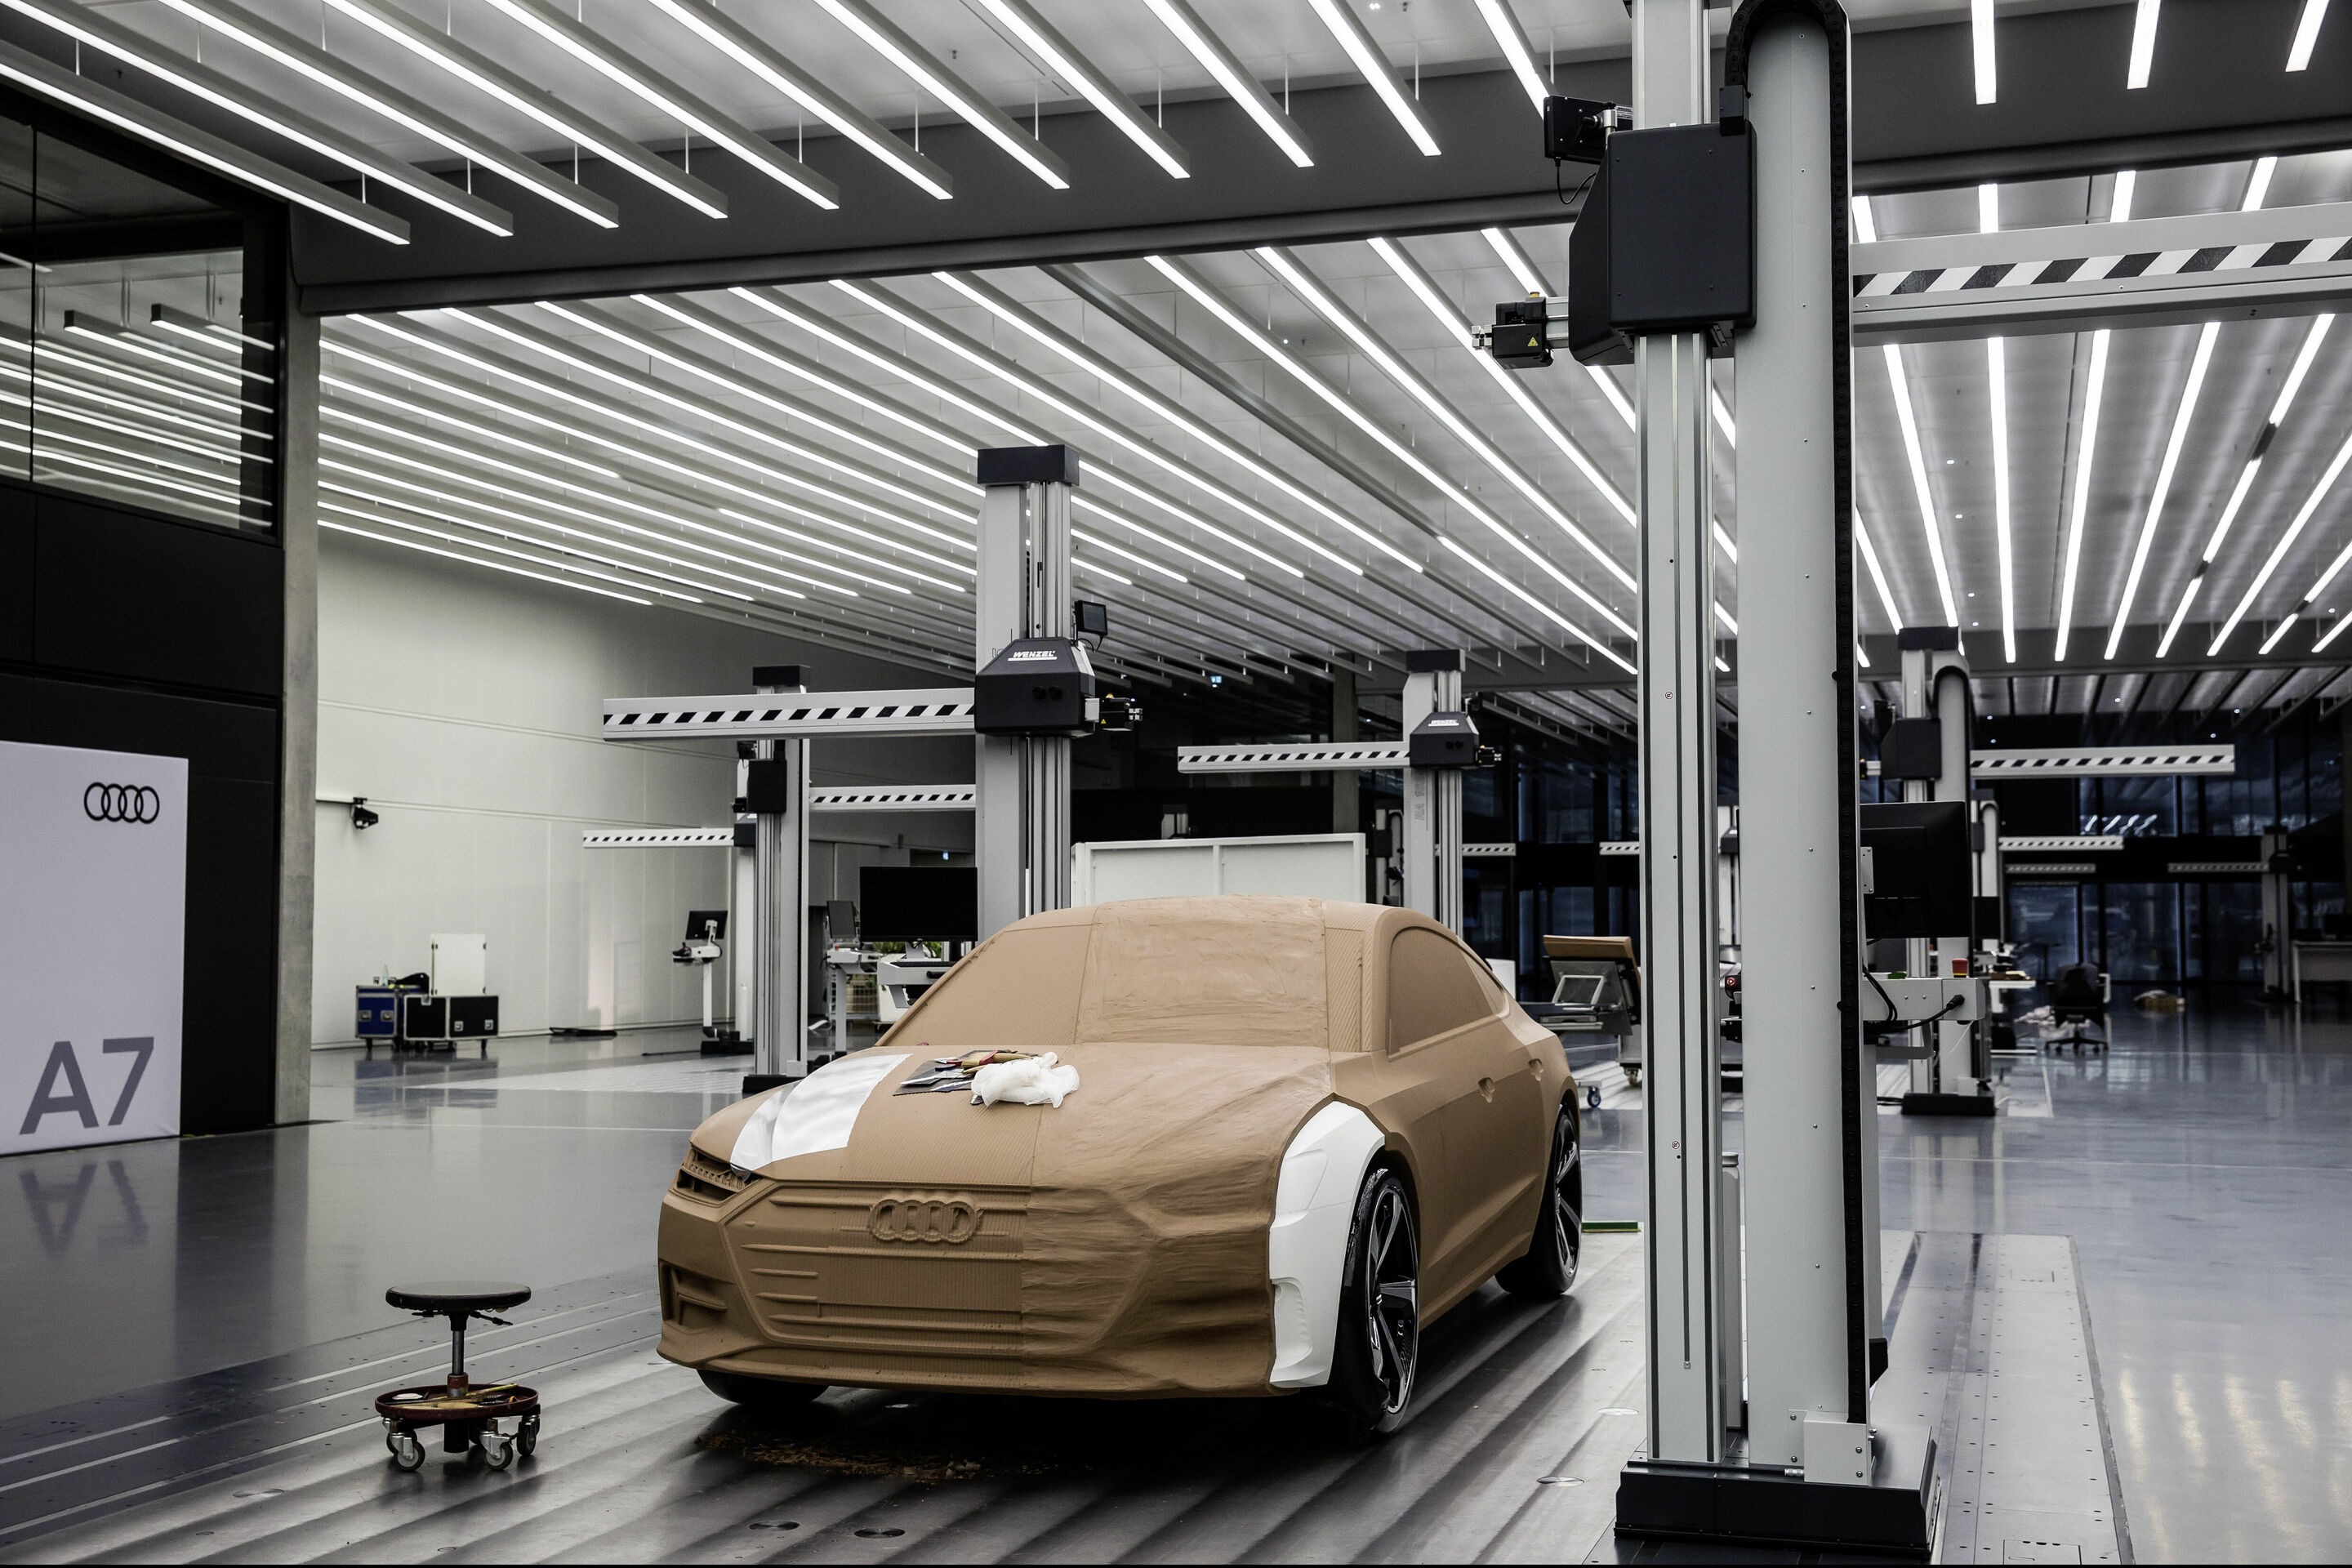 Von der Idee zum fertigen Auto: Hightech und Handarbeit im Audi-Design